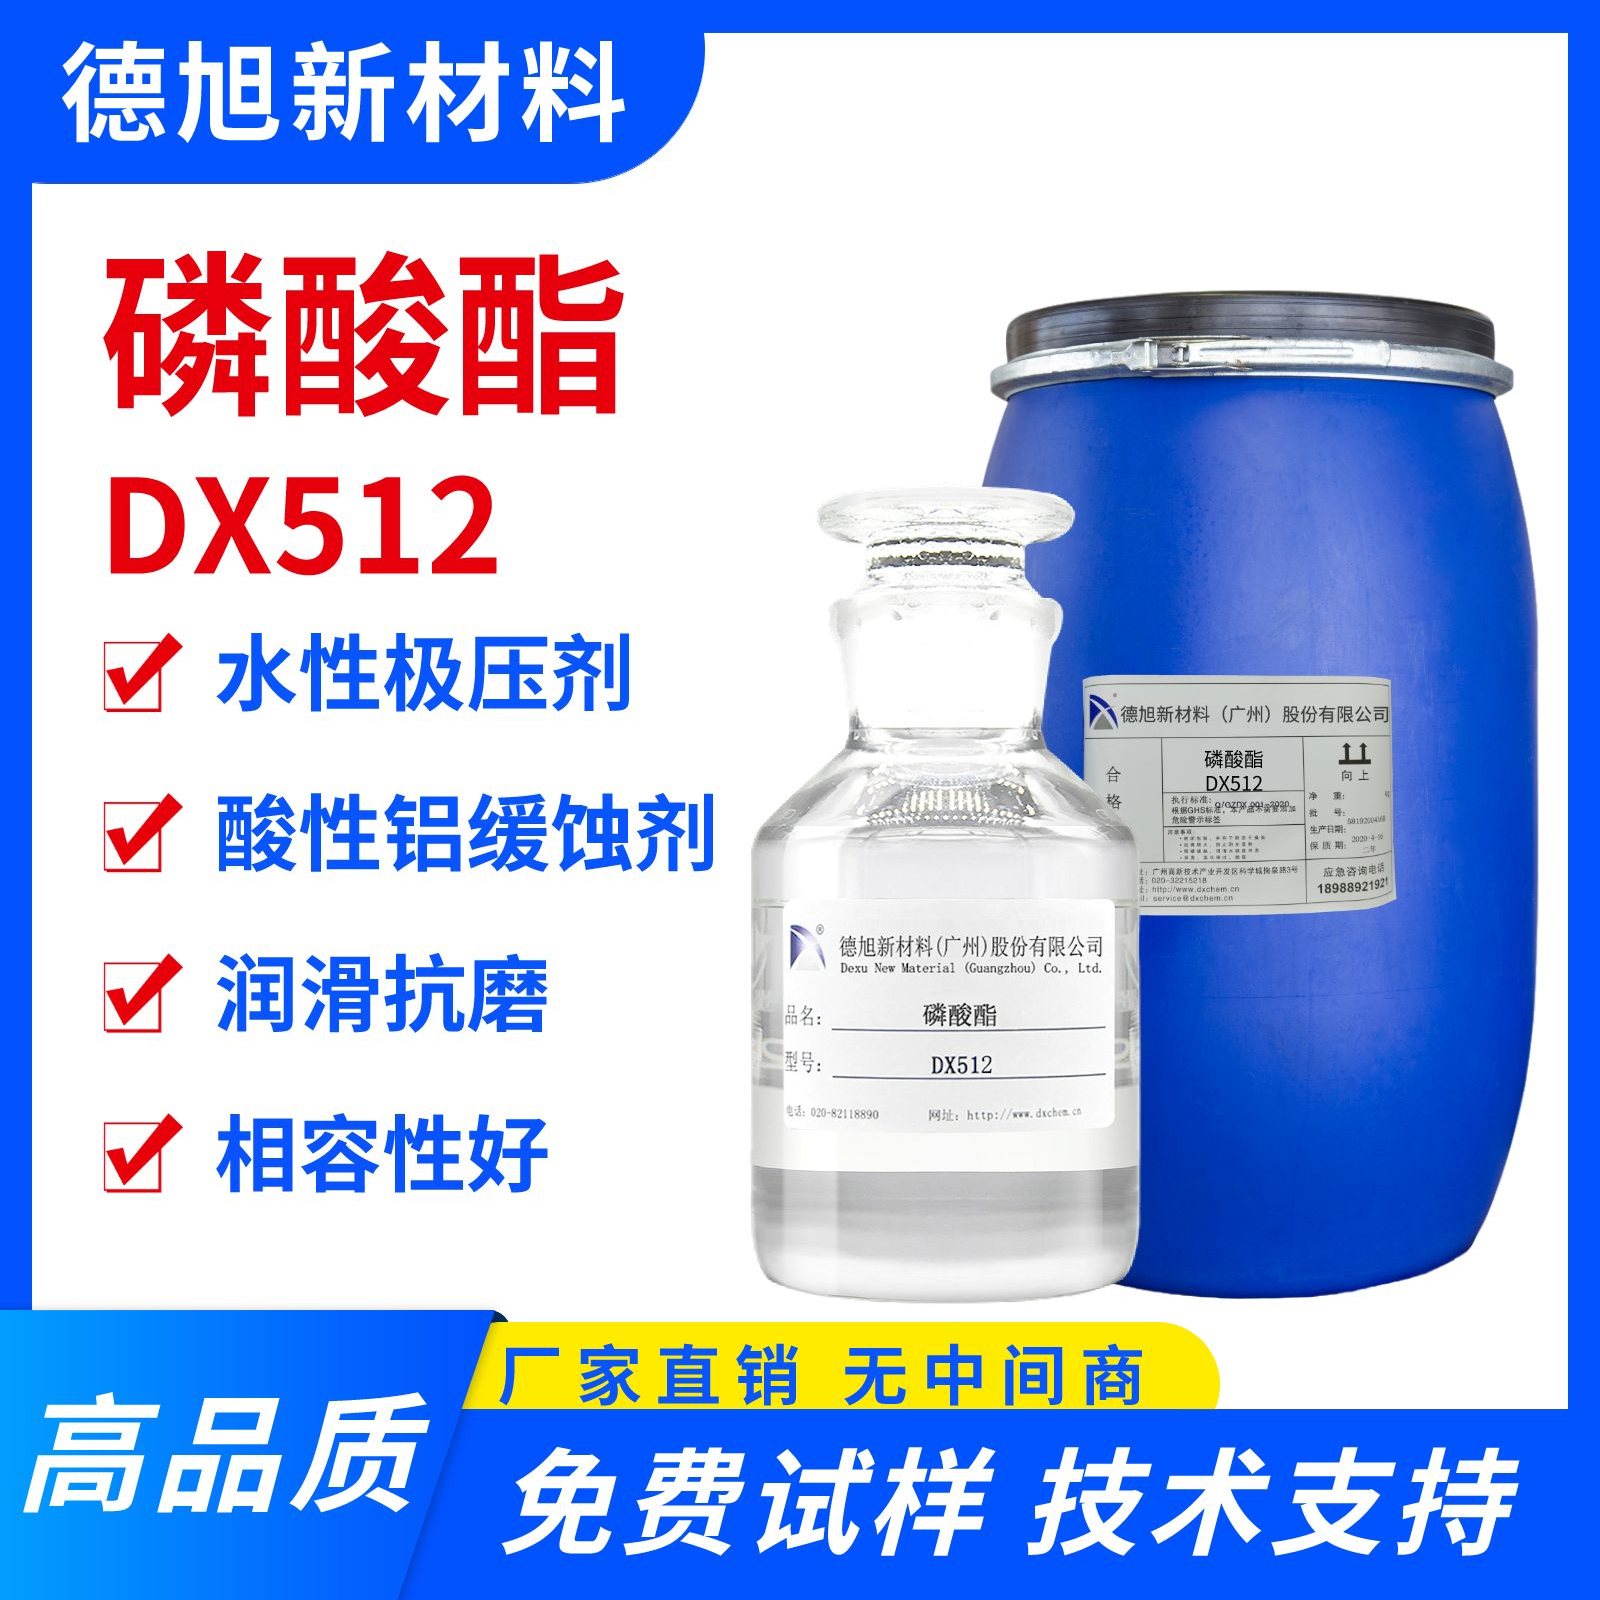 磷酸酯 DX512 水性极压抗磨剂 低泡分散性价 金属加工液润滑剂